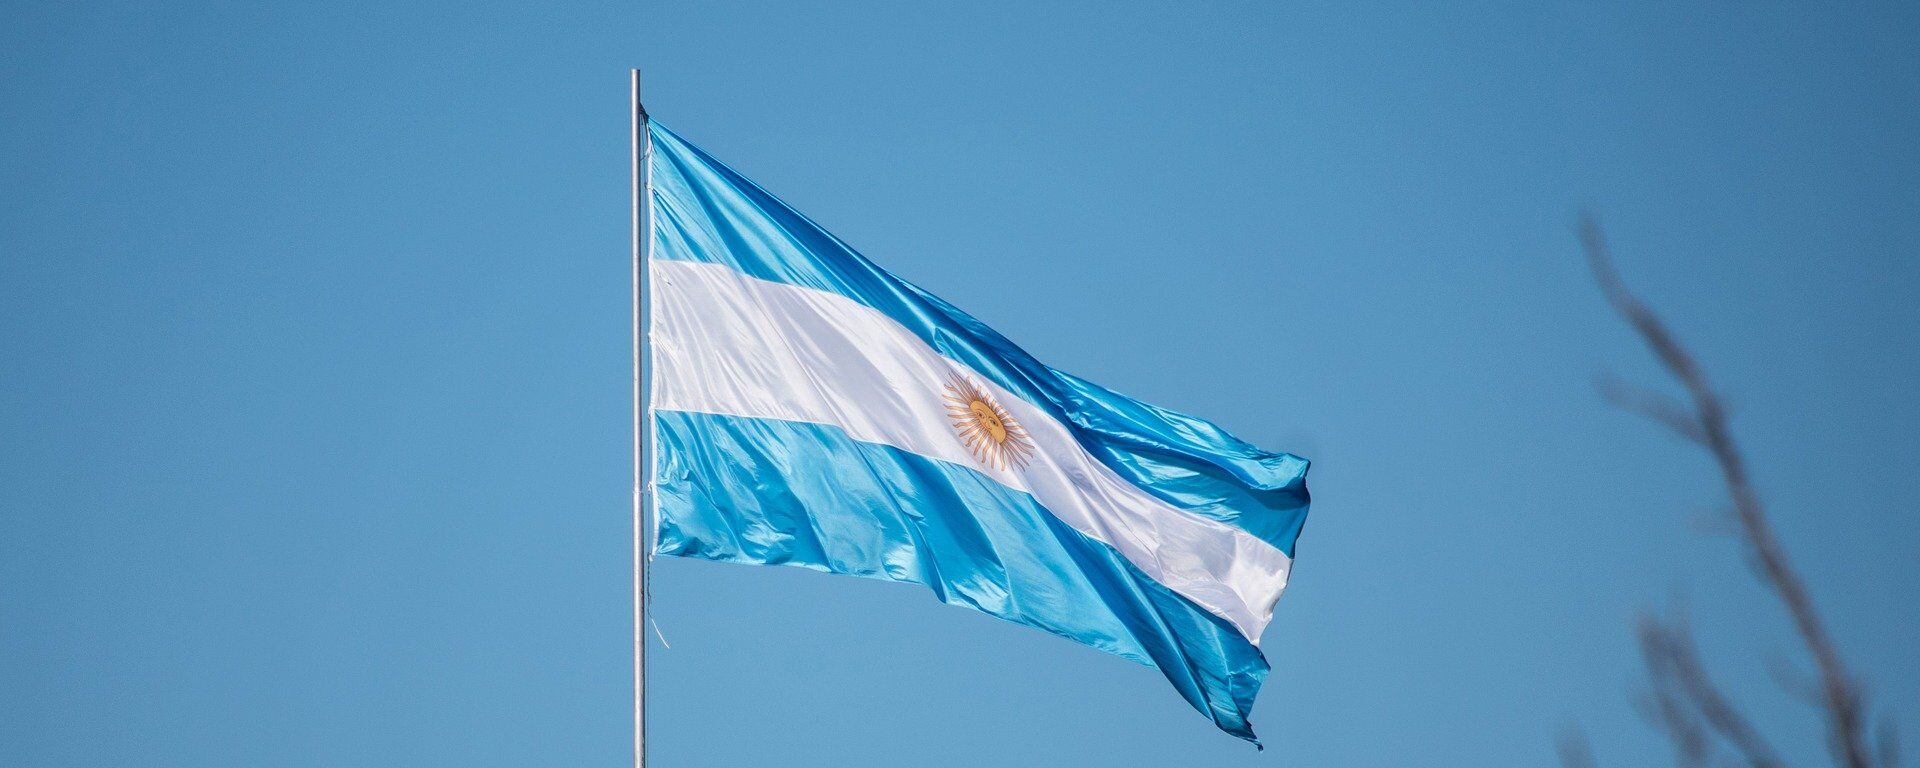 La bandera de Argentina - Sputnik Mundo, 1920, 31.07.2021